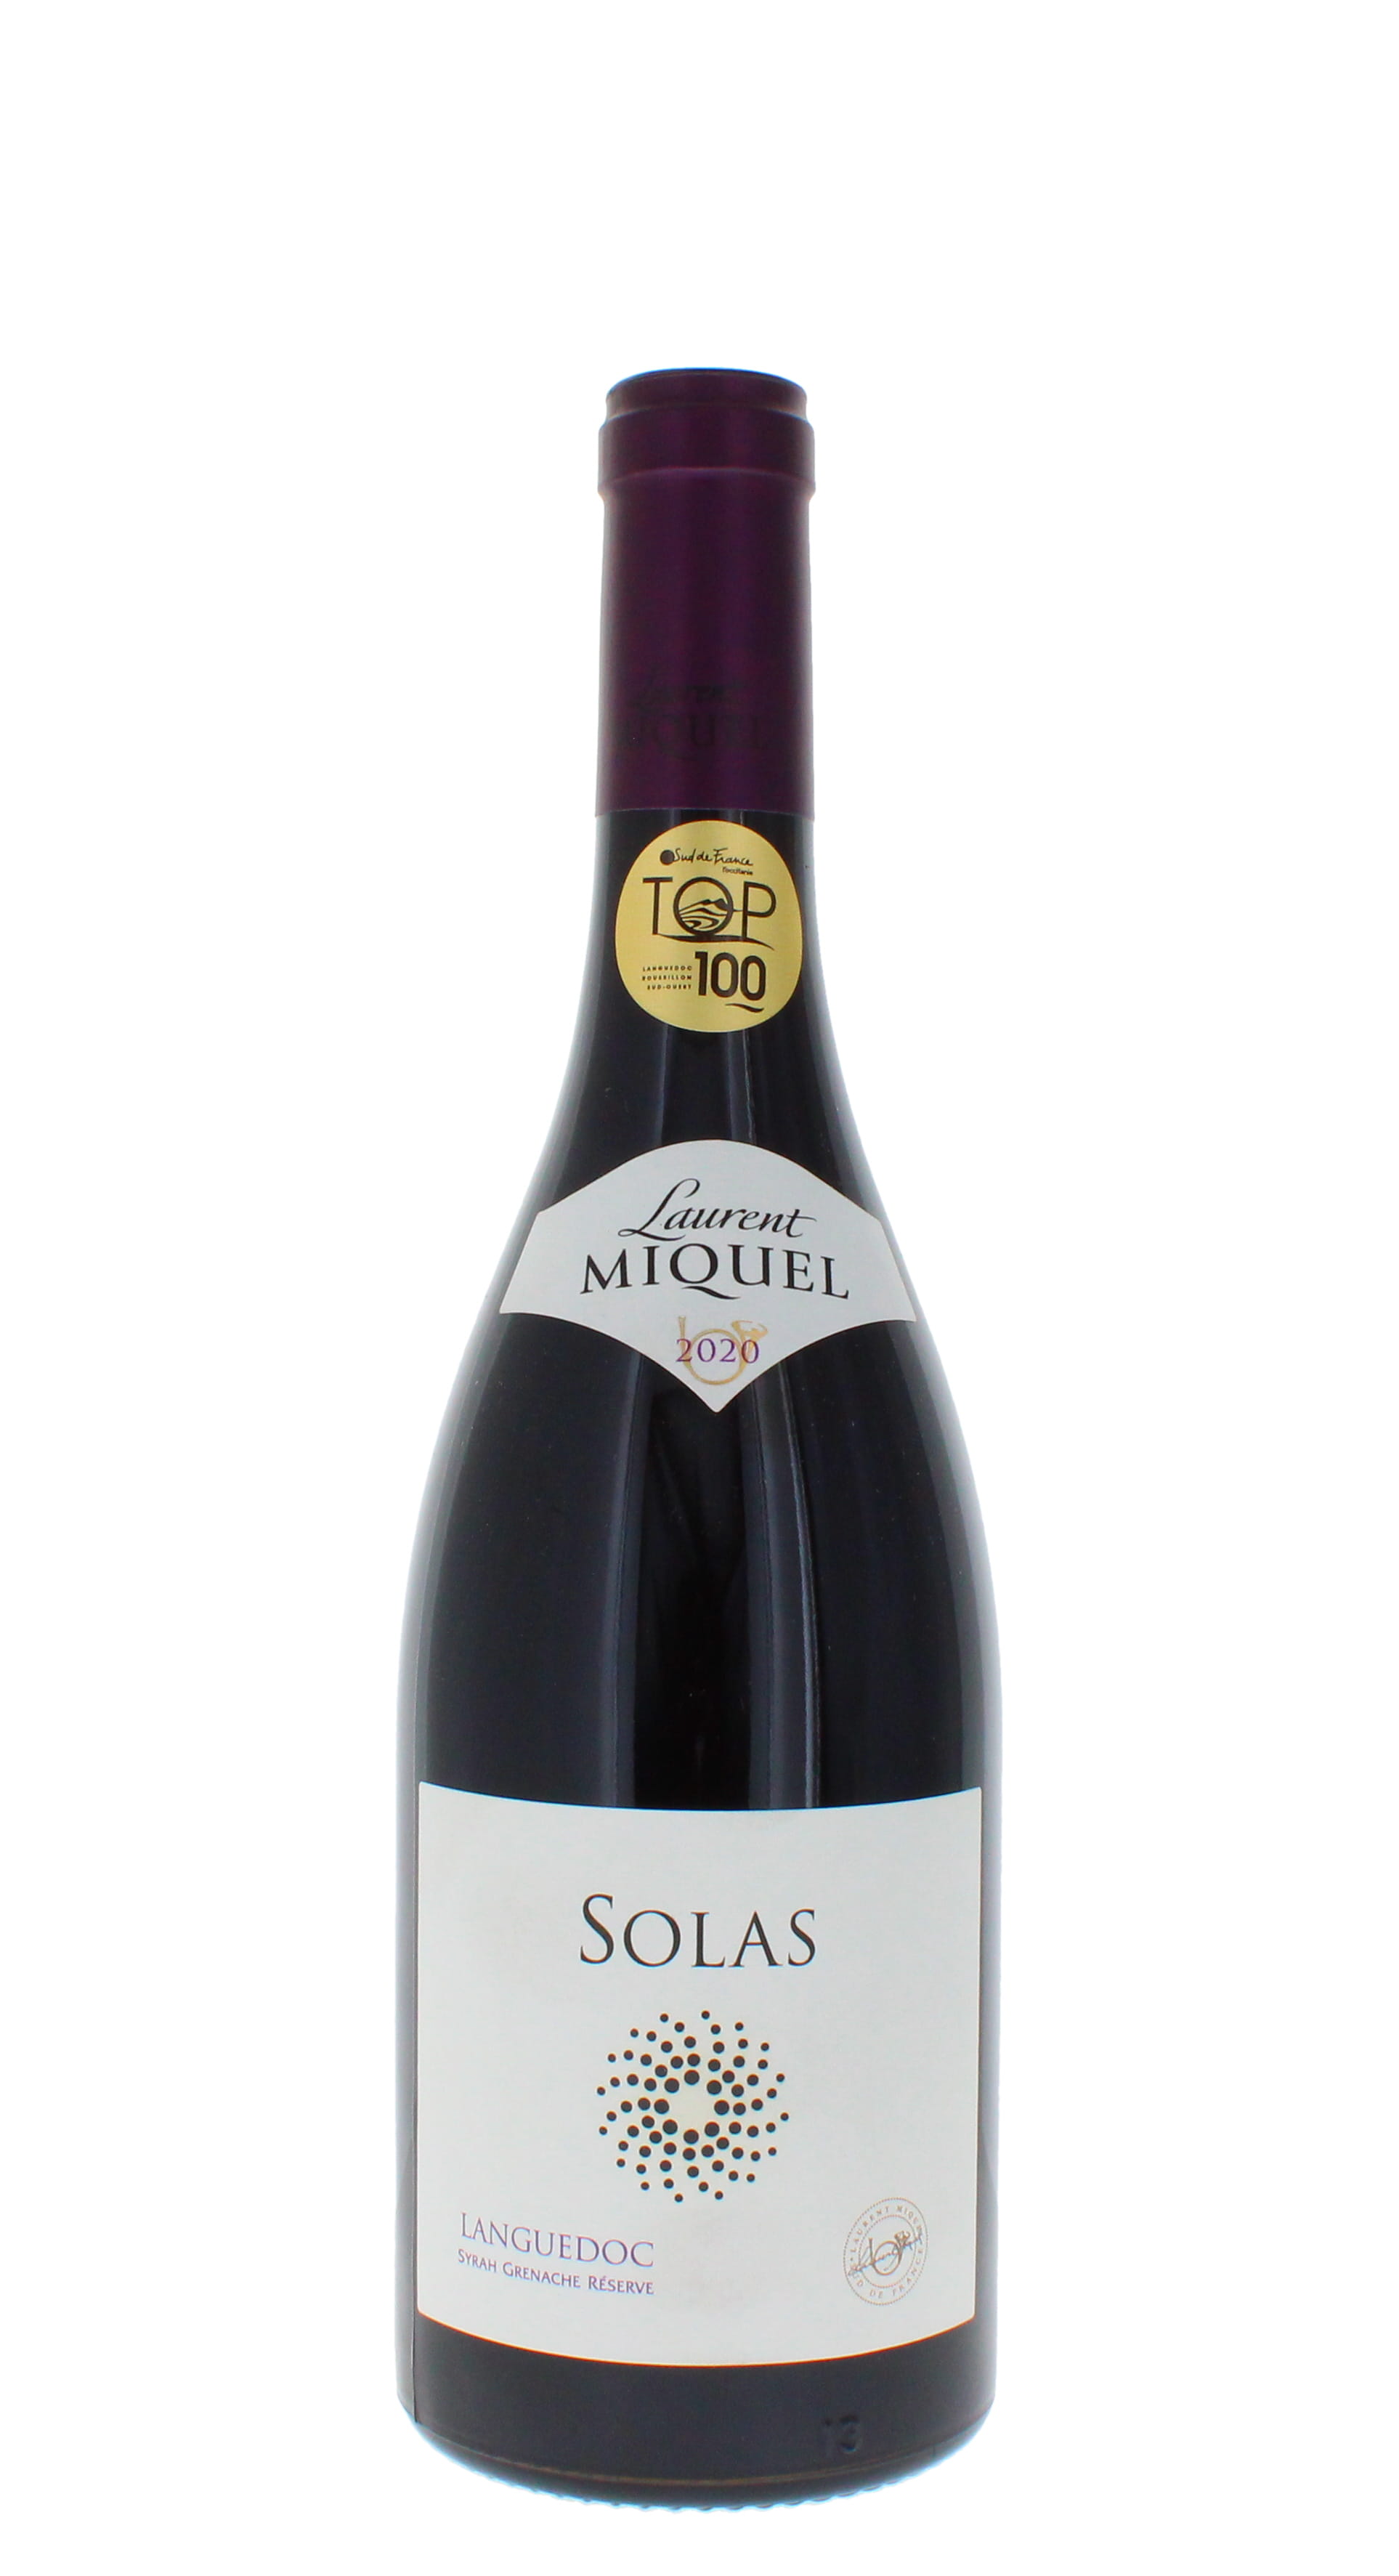 Bottle image of Laurent Miquel, Solas Languedoc